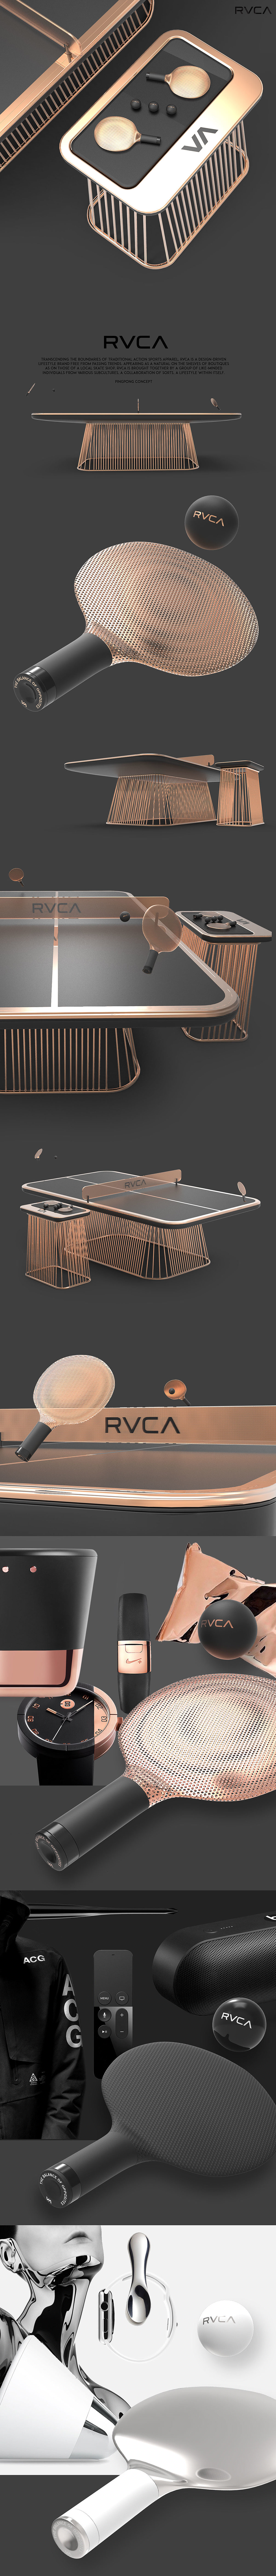 RVCA，乒乓球，概念，简约，